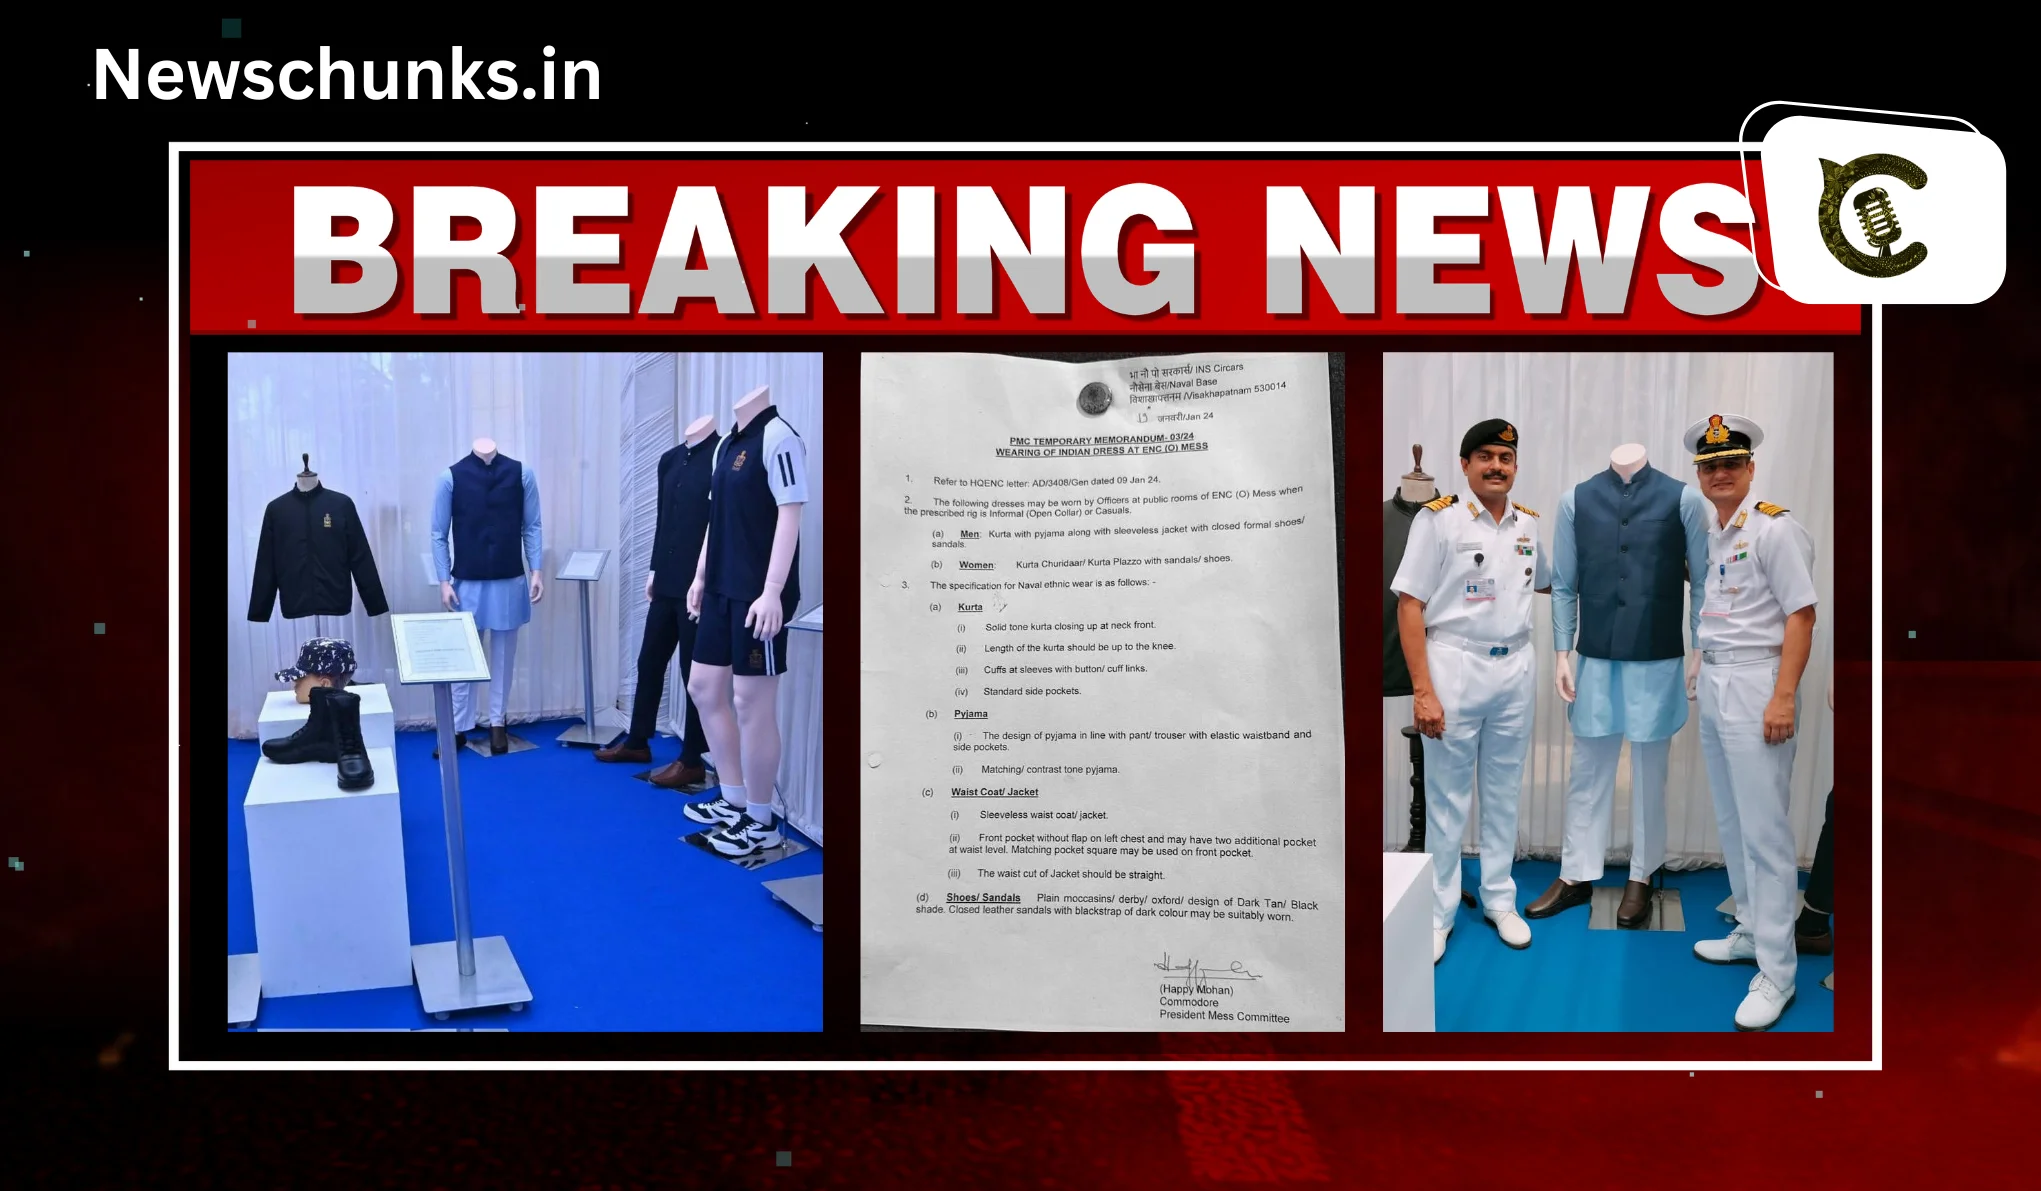 Now Indian Navy soldiers will wear kurta-pajama: अब कुर्ता-पायजामा पहनेंगे इंडियन नेवी के जवान, जानें क्या और क्यों हुआ है ऐसा आदेश